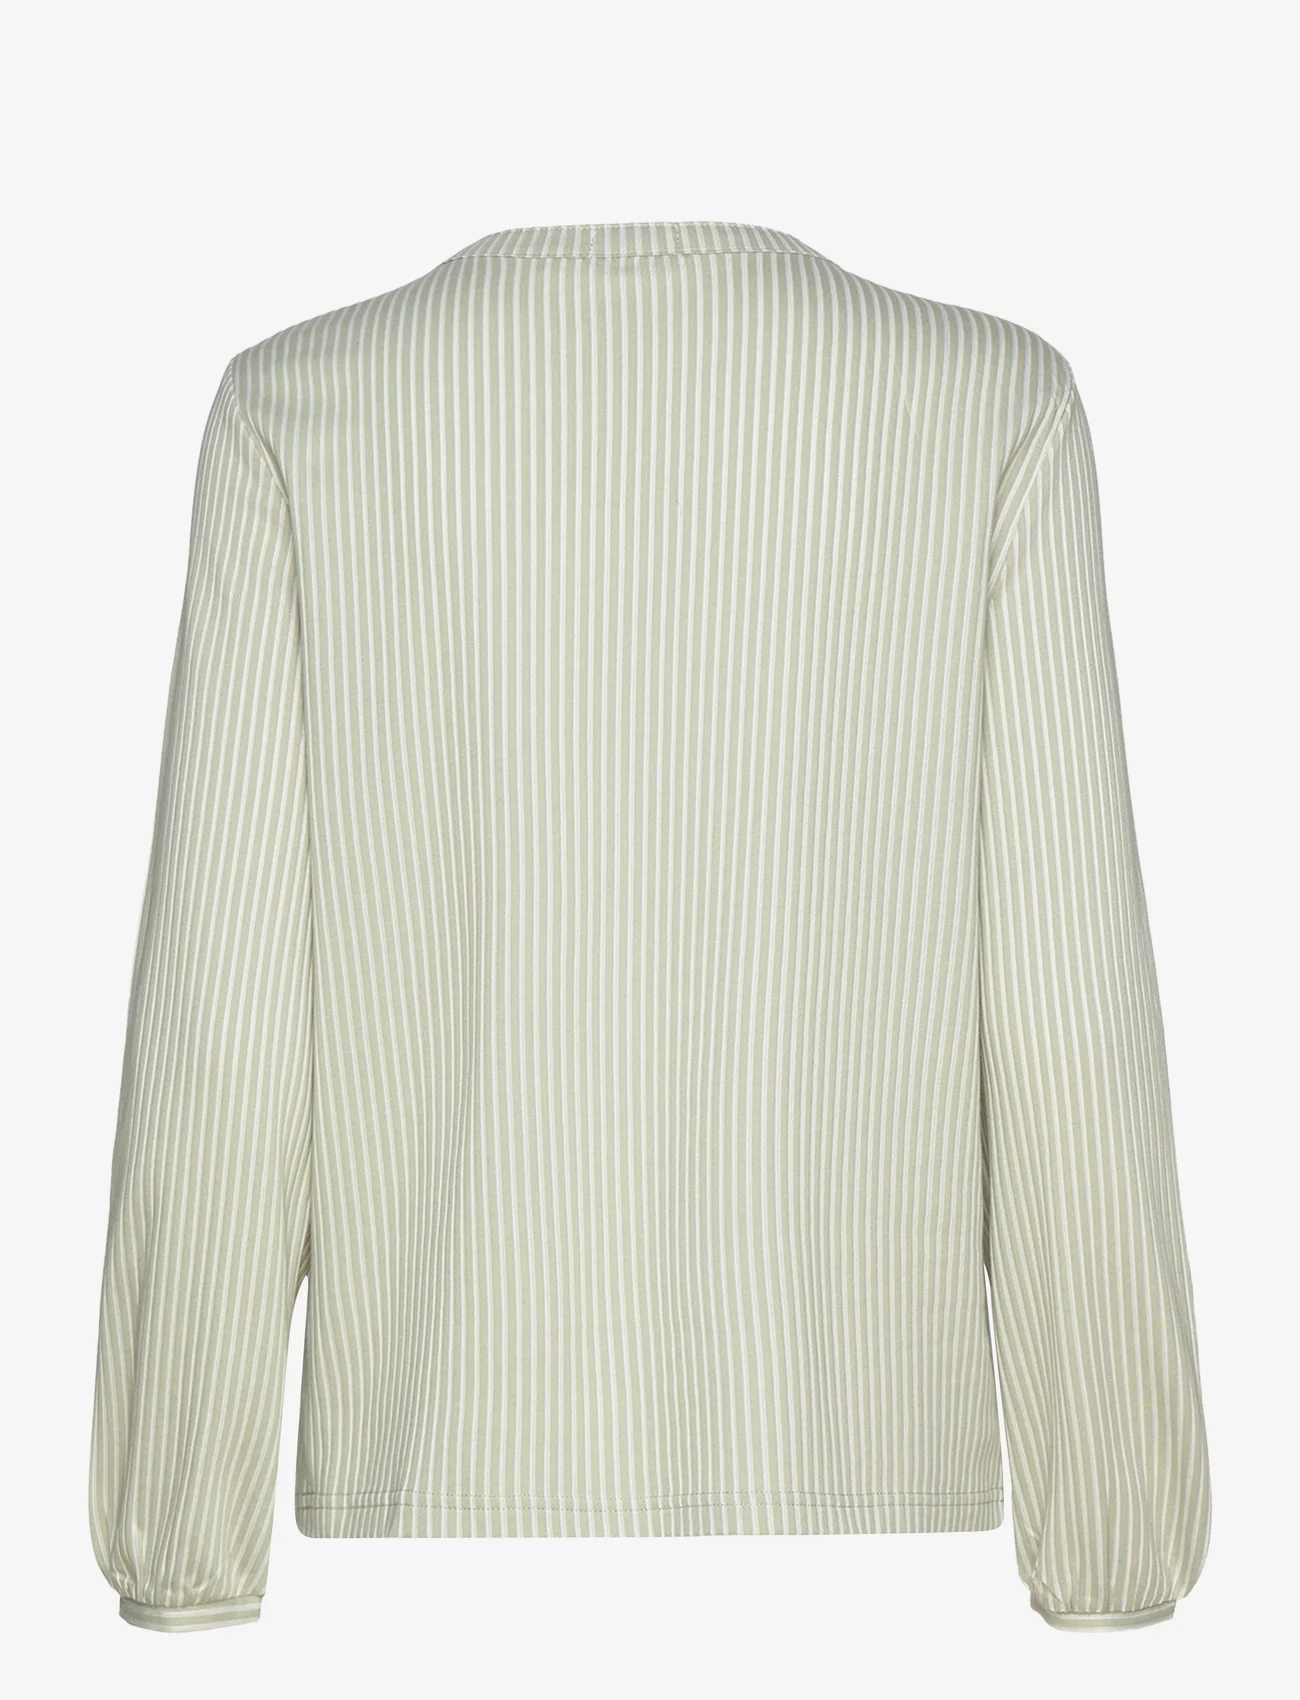 Tom Tailor - T-shirt blouse vertical stripe - langærmede bluser - desert green white thin stripe - 1